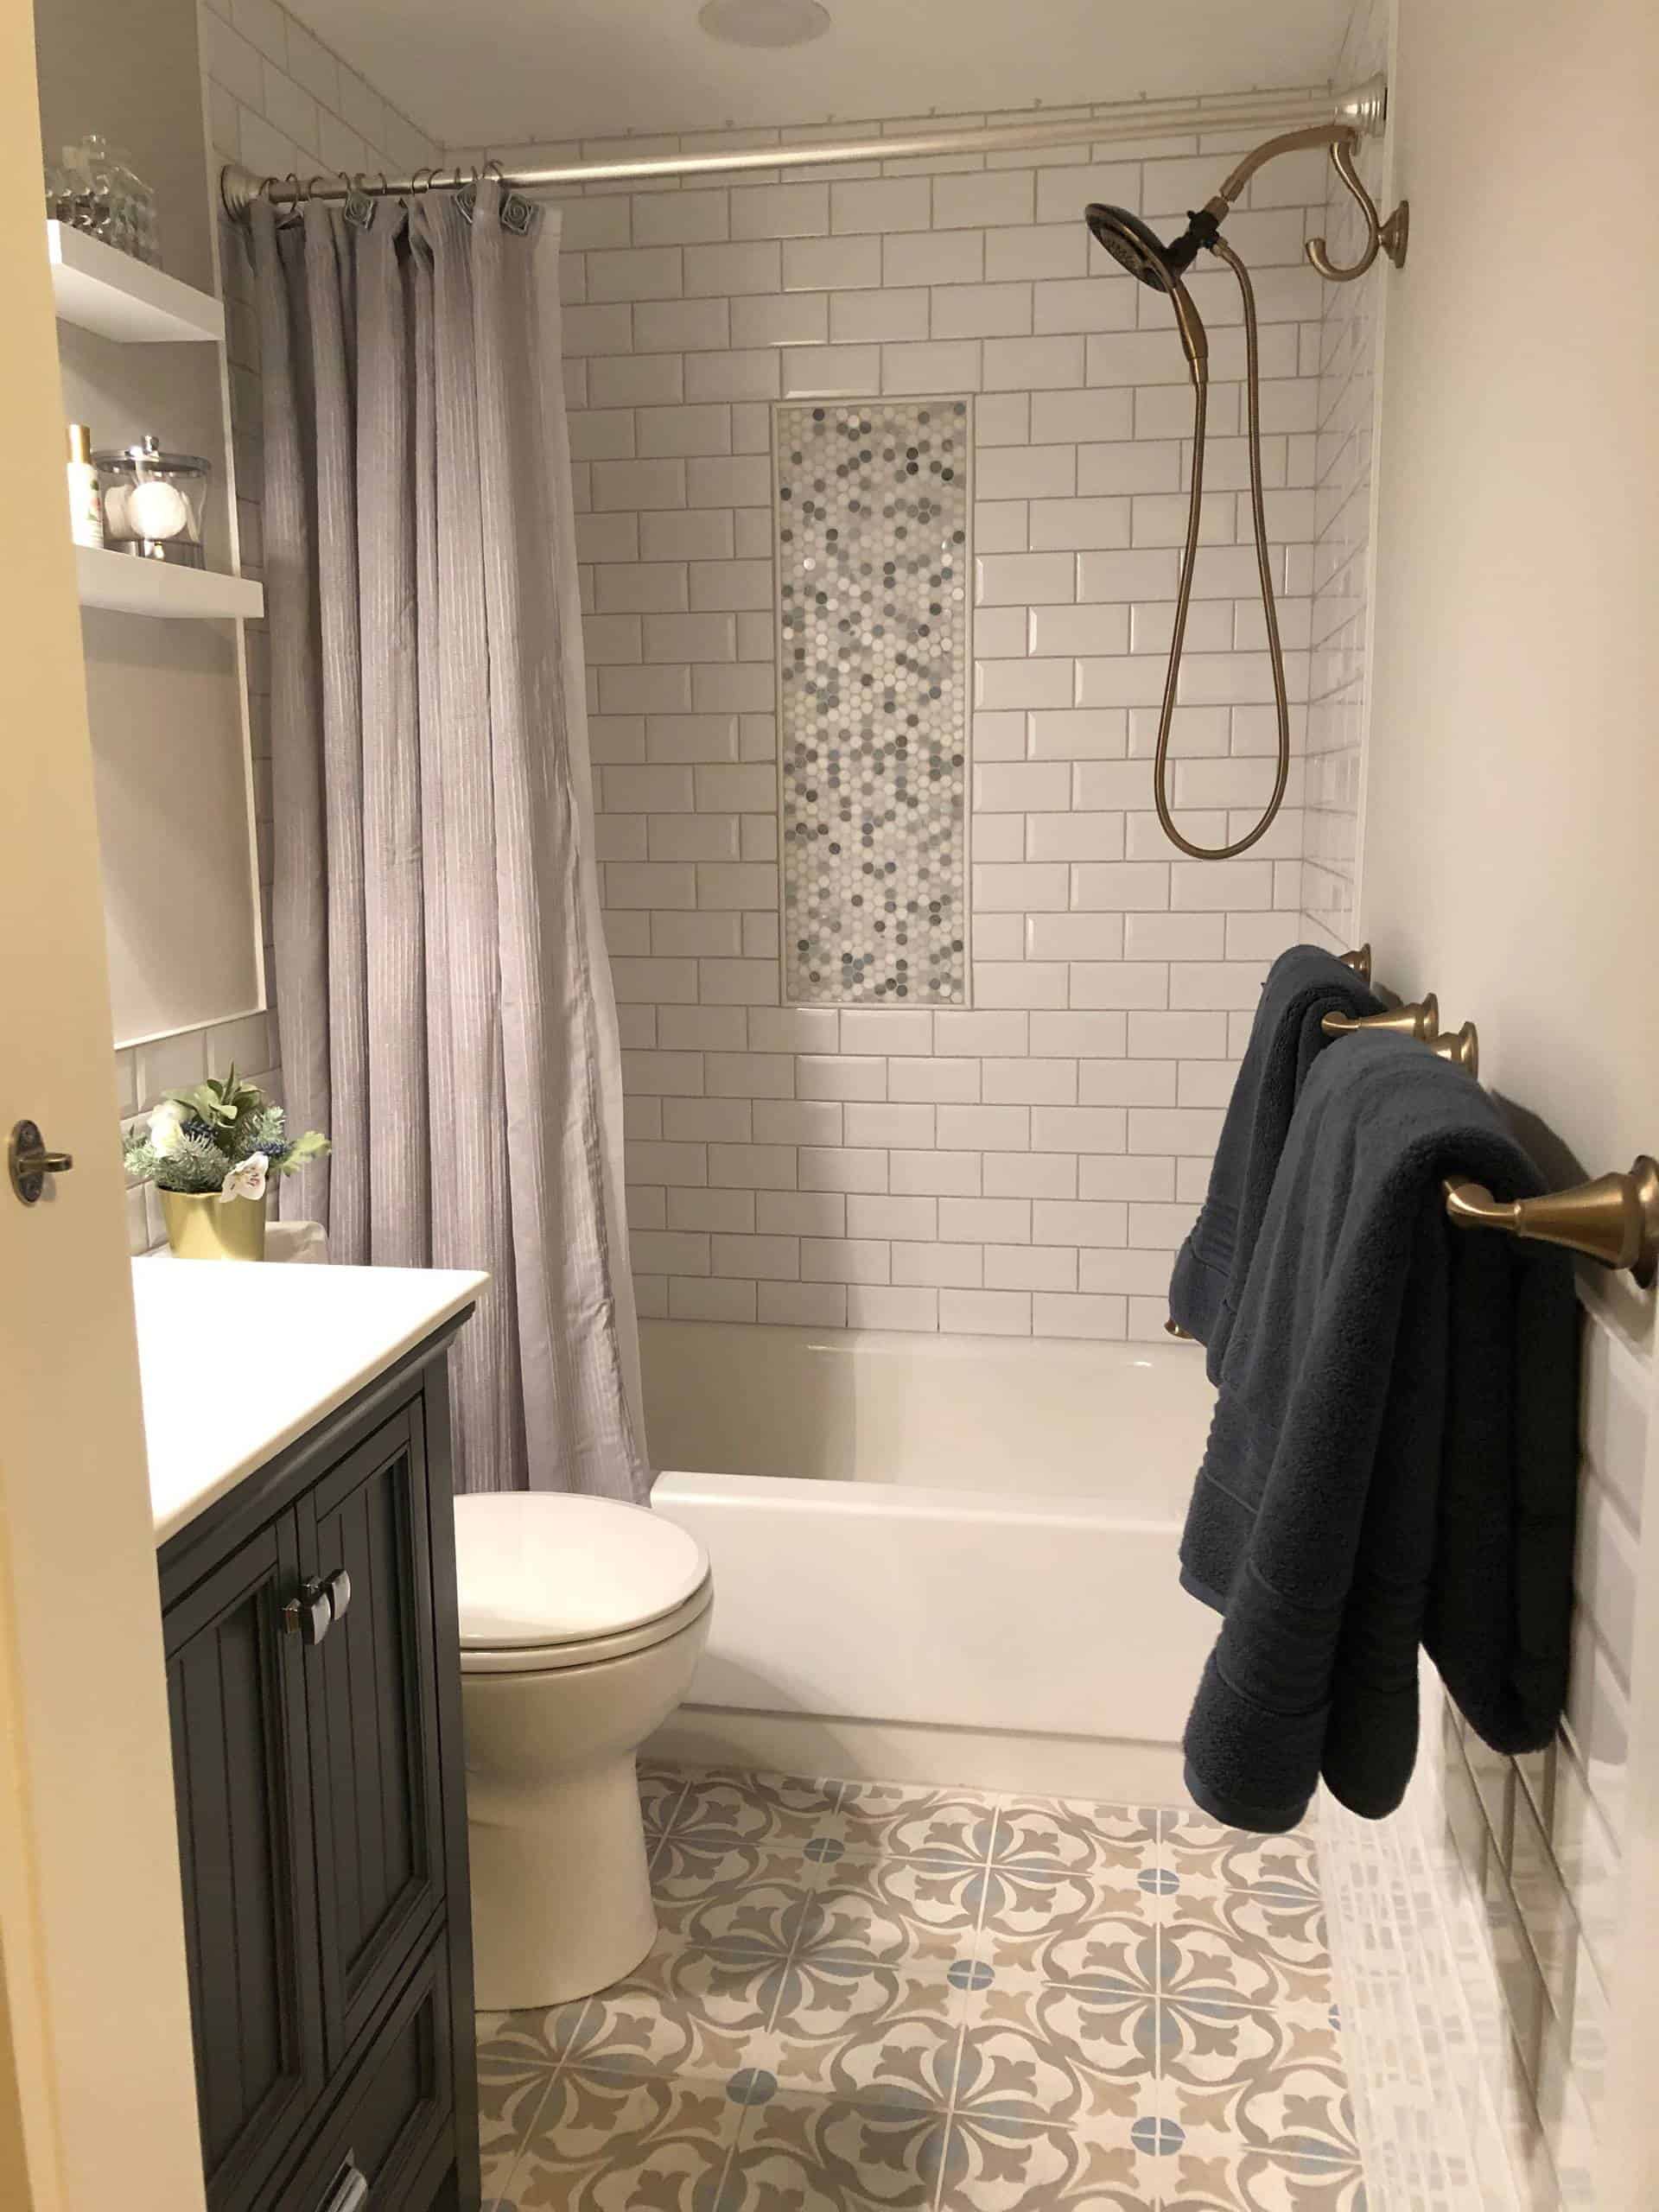 28 Small Bathroom Ideas With Bathtubs, Tile Ideas For Small Bathroom With Tub